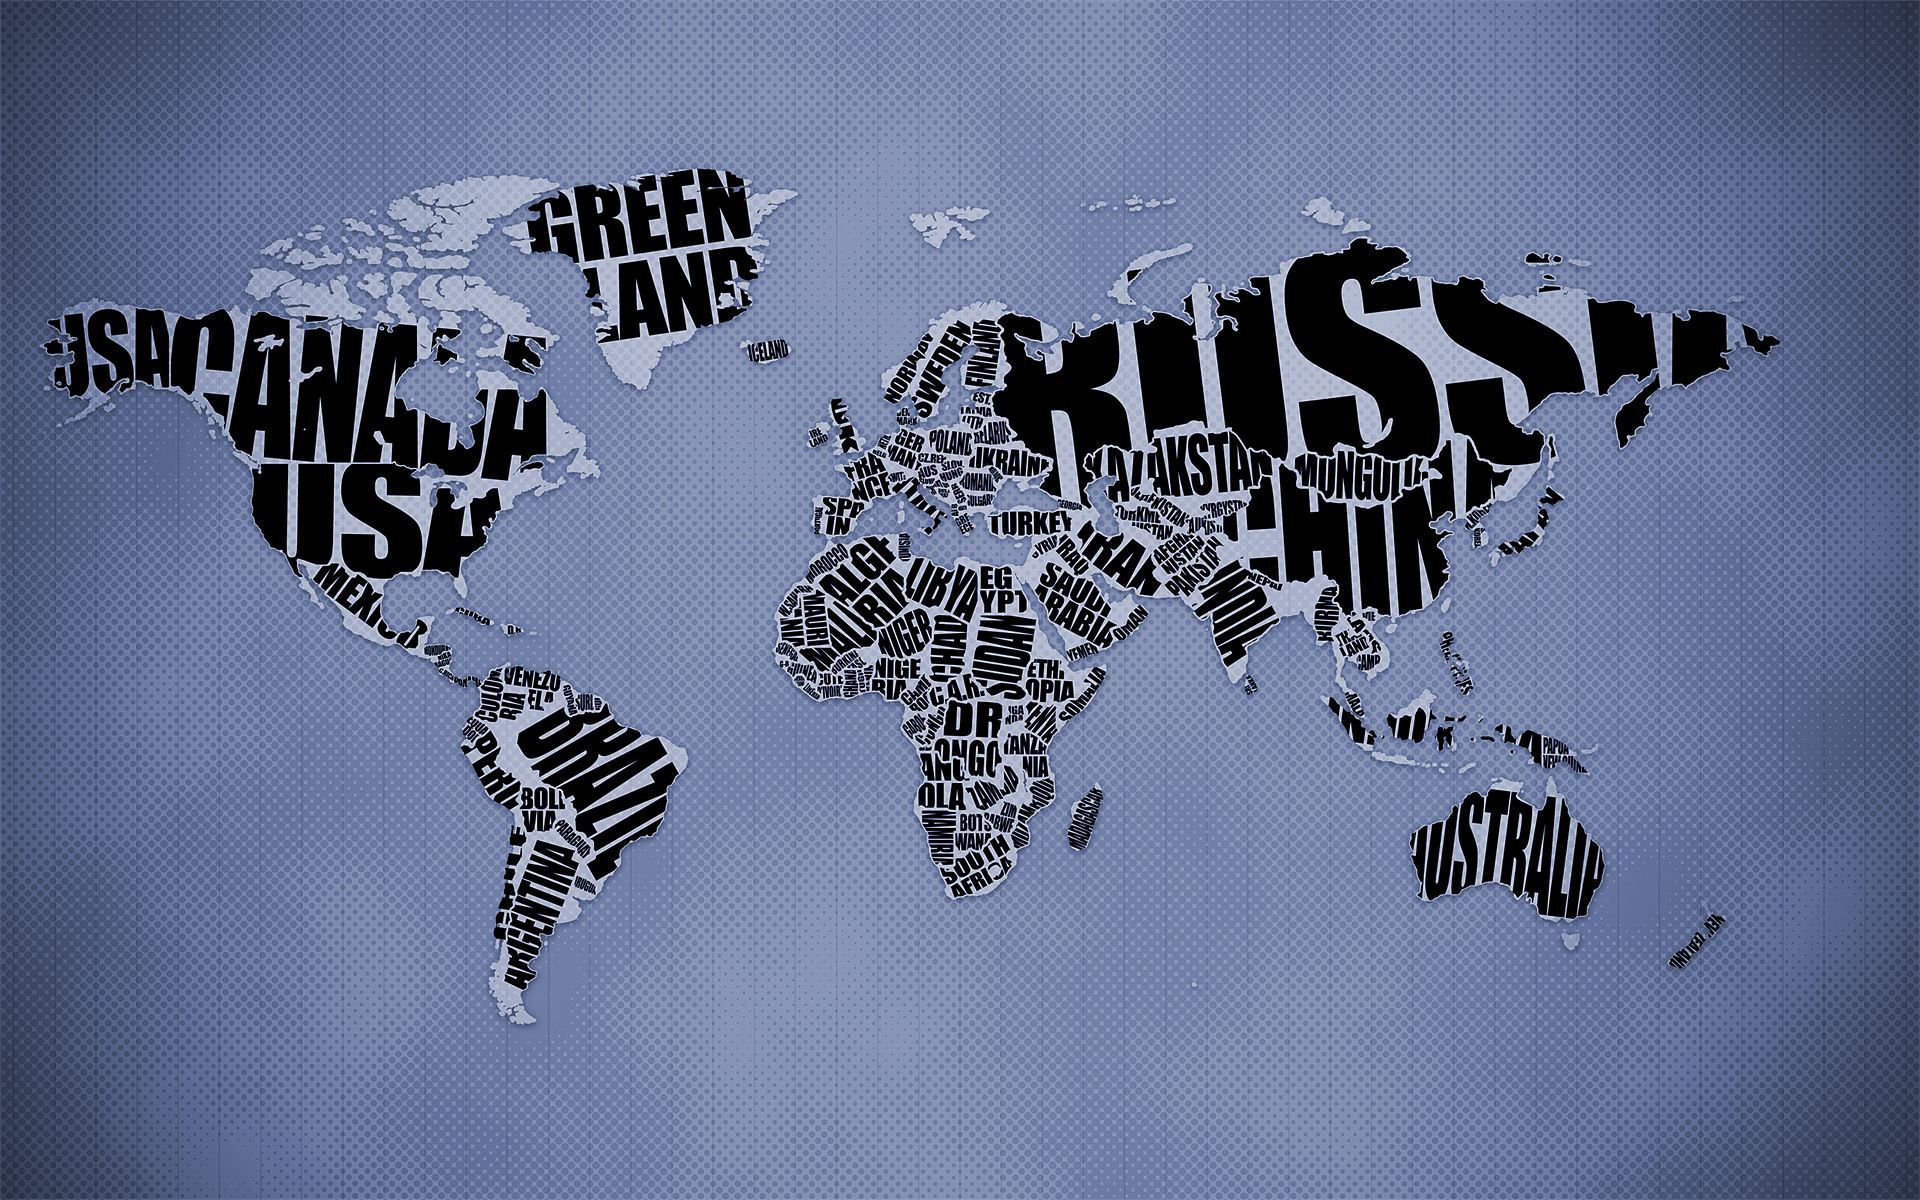 world map - desktop wallpaper